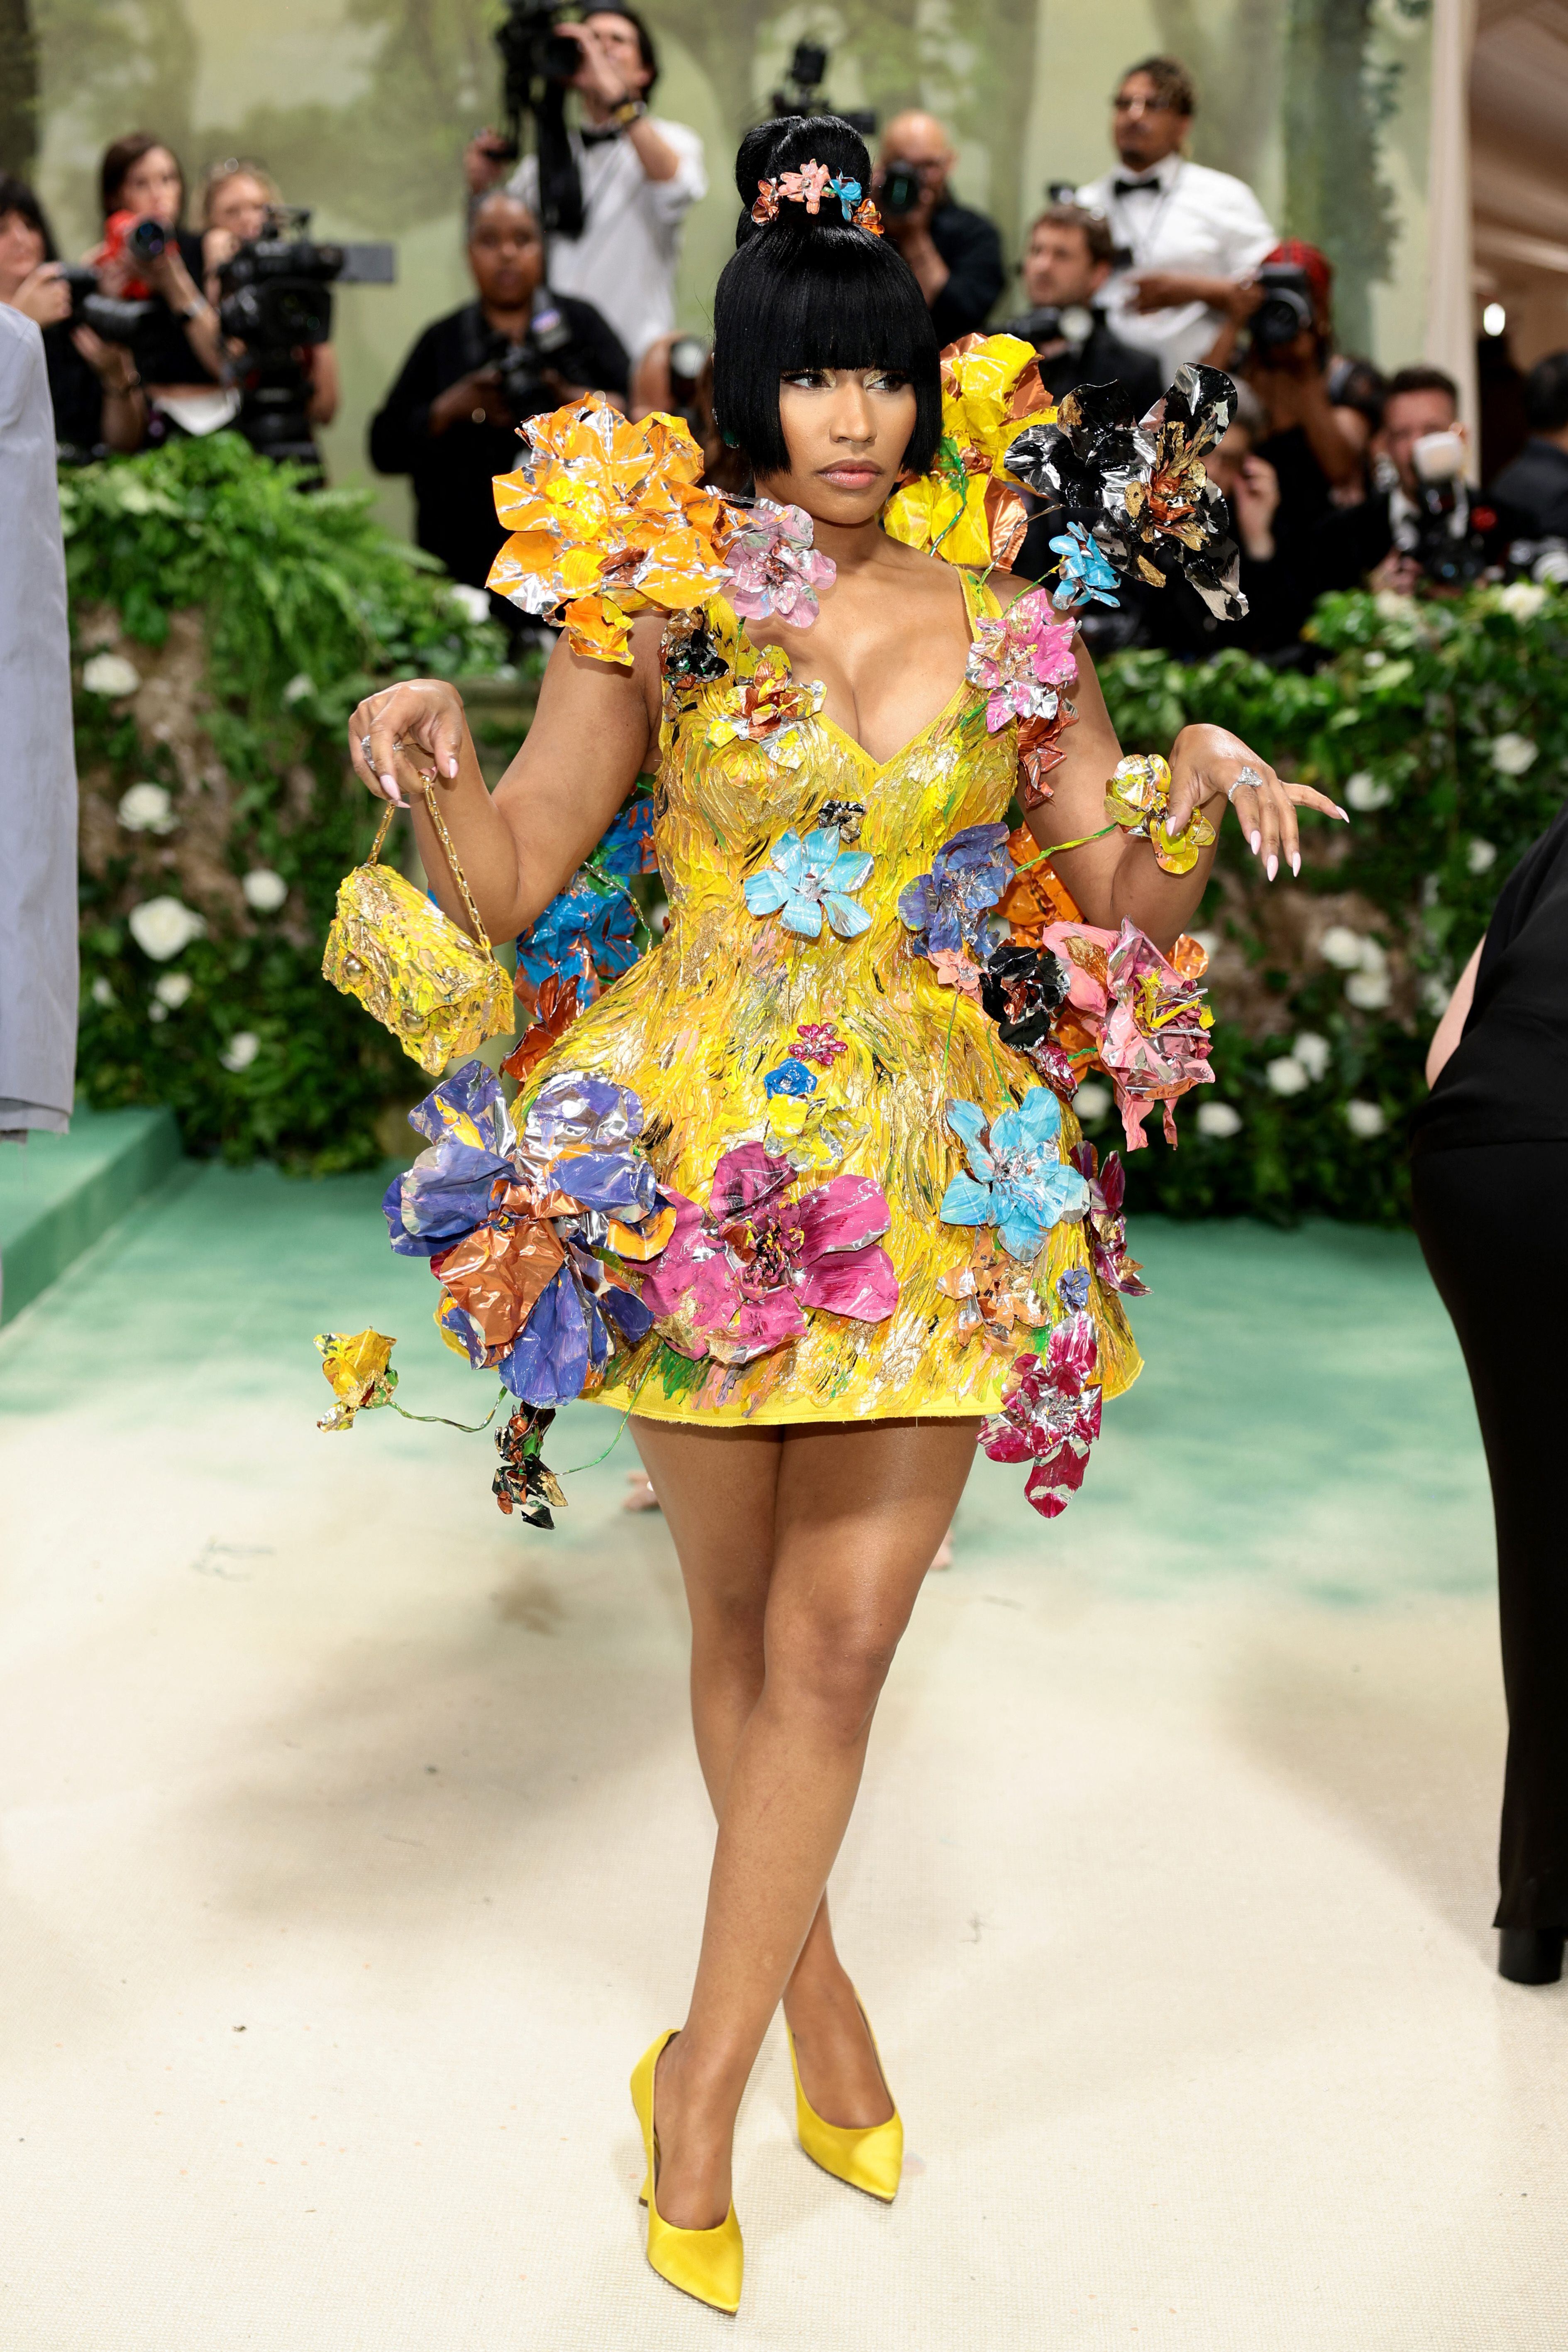 La cantante y rapera estadounidense Nicki Minaj fue elogiada en redes por utilizar un vestido amarillo cubierto de flores metálicas en 3D. Vogue describió su atuendo como una 